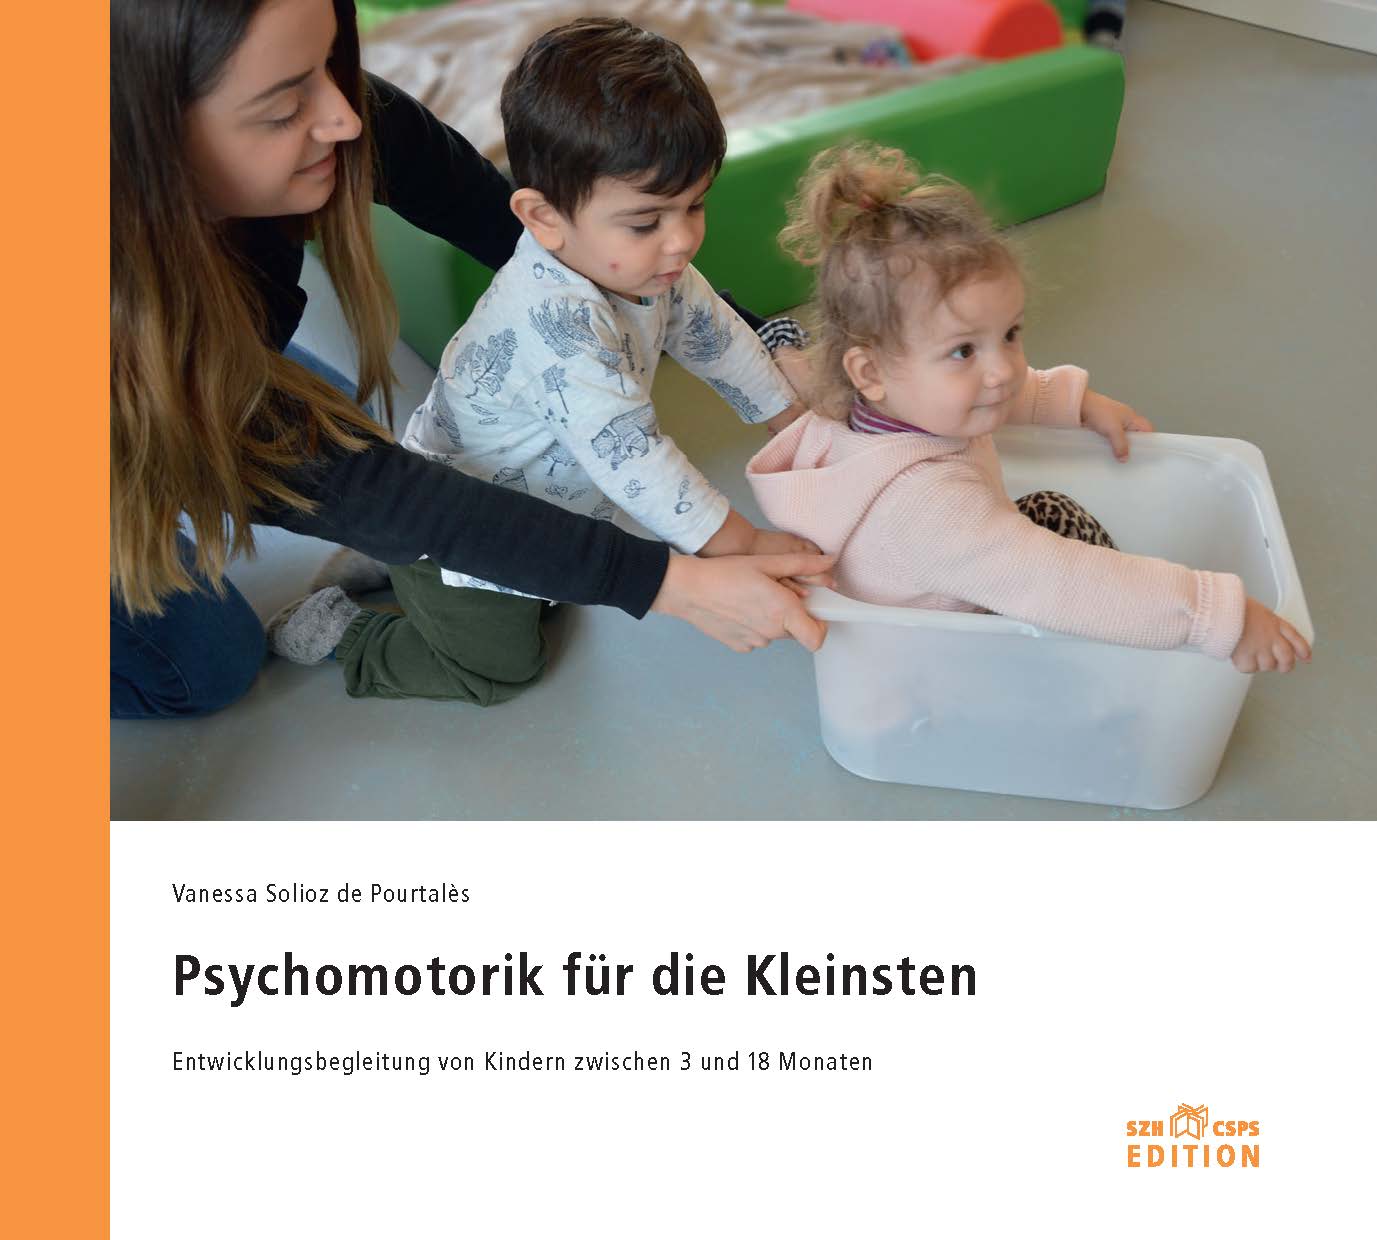  Das Bild zeigt das Buchcover. Darauf sieht man ein Foto mit zwei kleinen Kinder und einer Therapeutin bei der psychomotorischen Arbeit. 